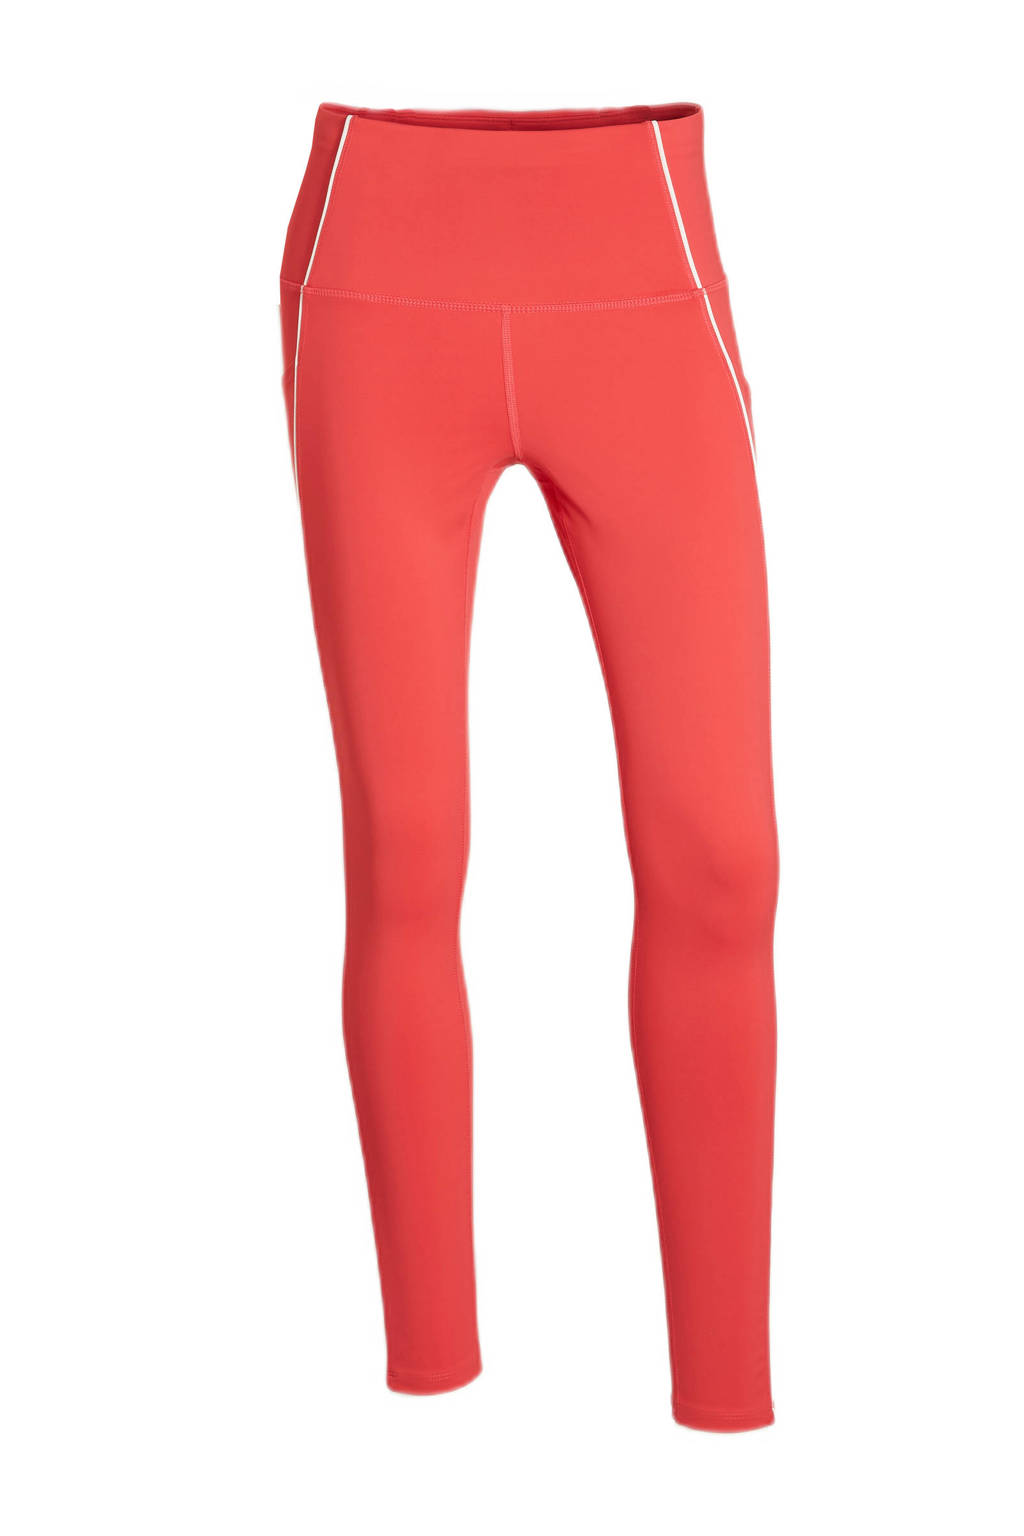 Roze dames C&A sportlegging van polyester met slim fit, regular waist en elastische tailleband